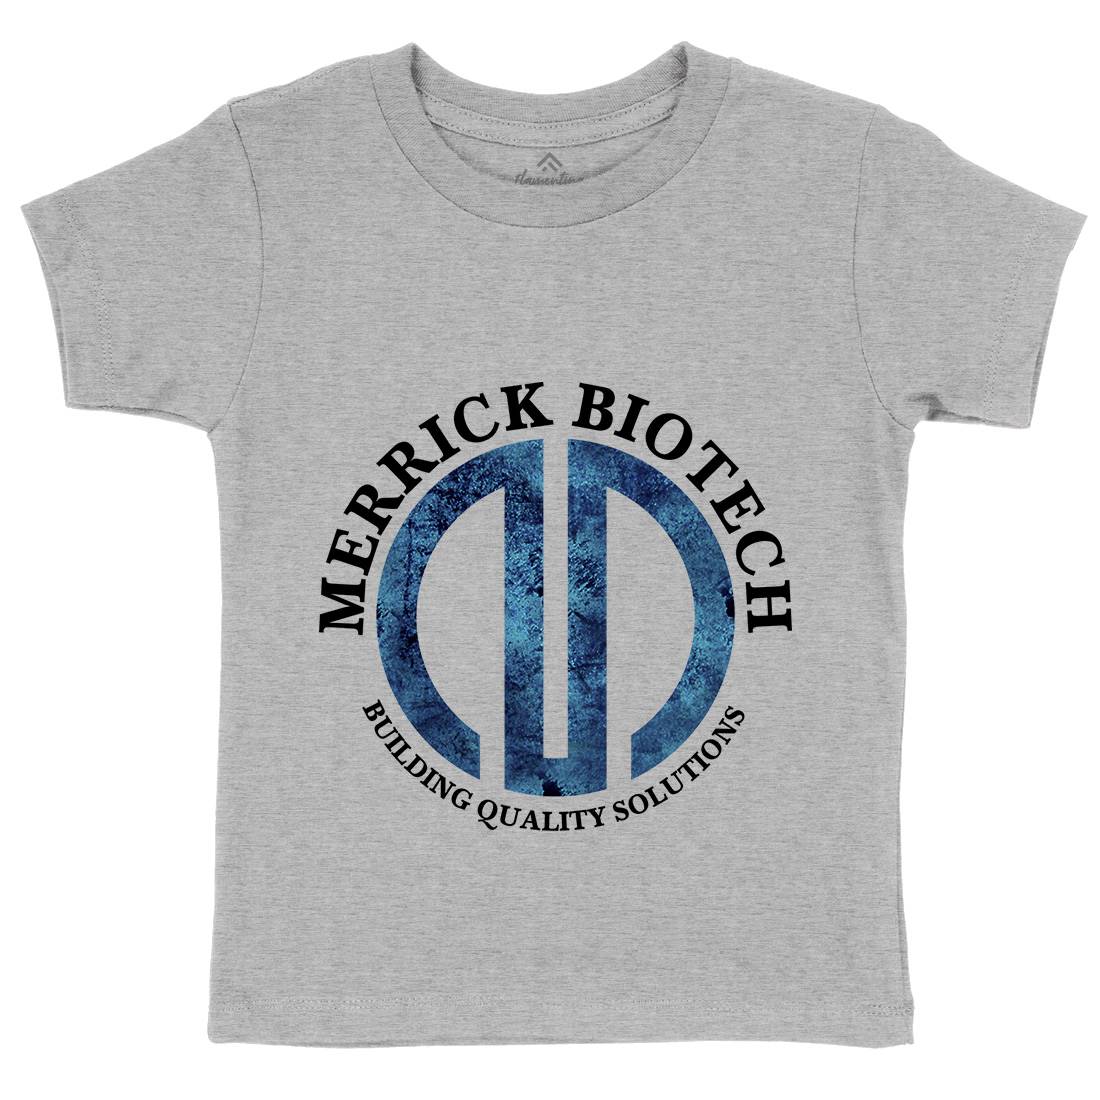 Merrick Biotech Kids Crew Neck T-Shirt Space D393